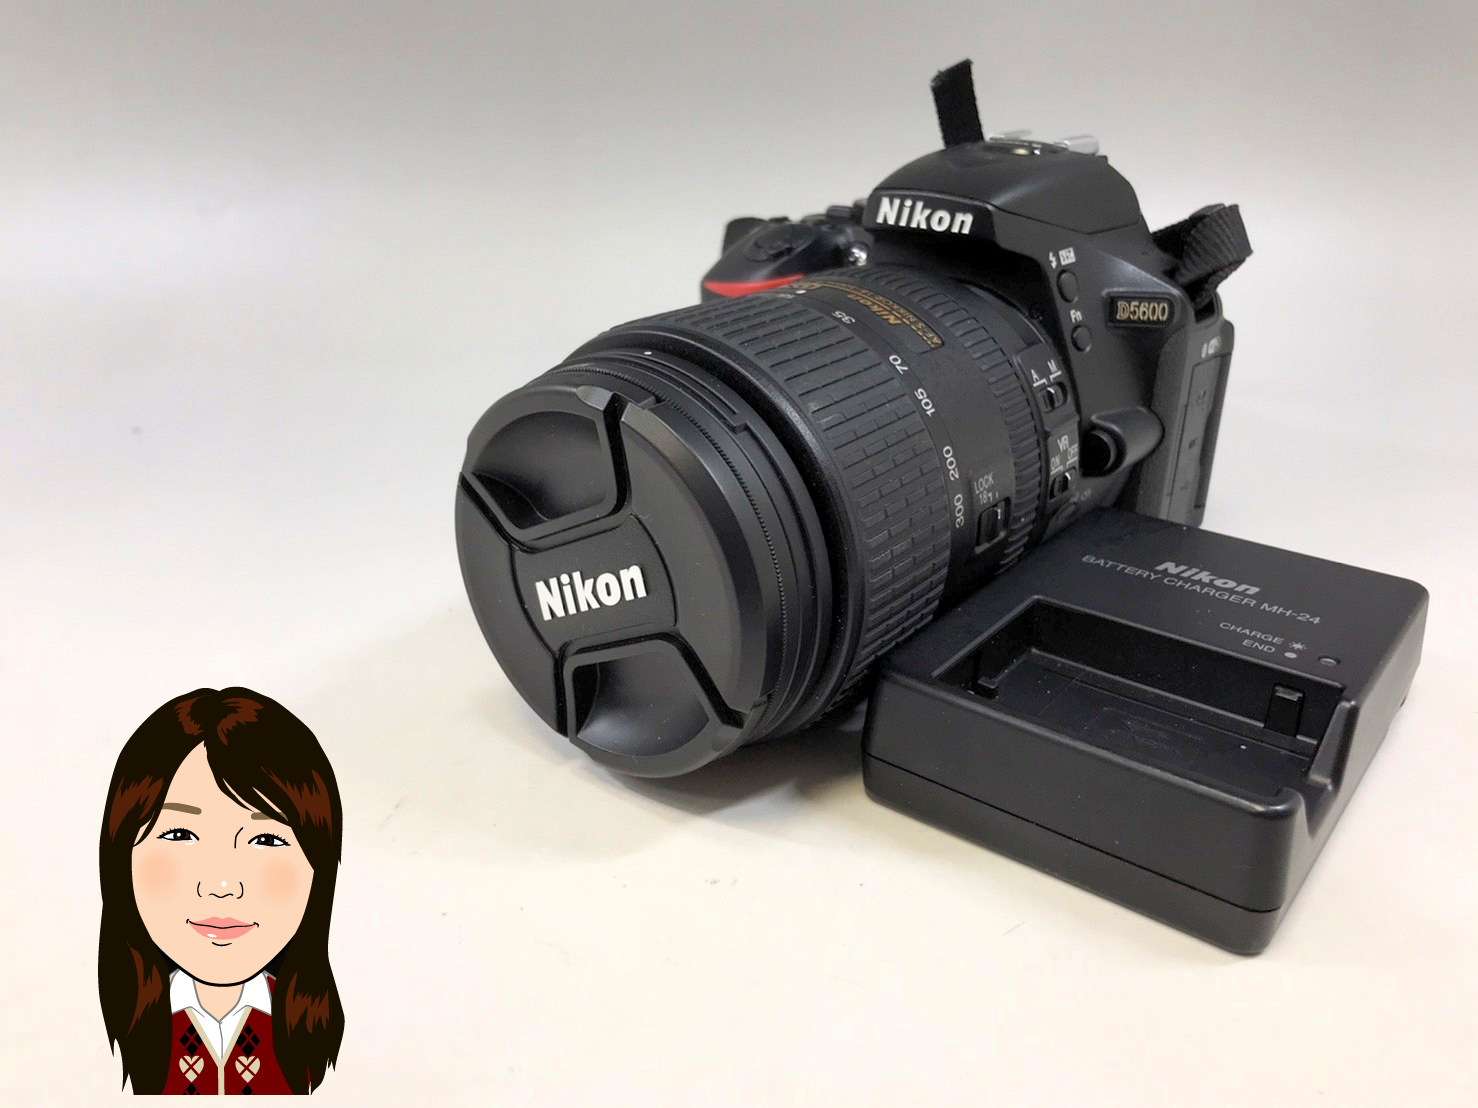 Nikon 【ニコン】 カメラボディD5600 レンズAF-S DX NIKKOR 18-300mm 画像1